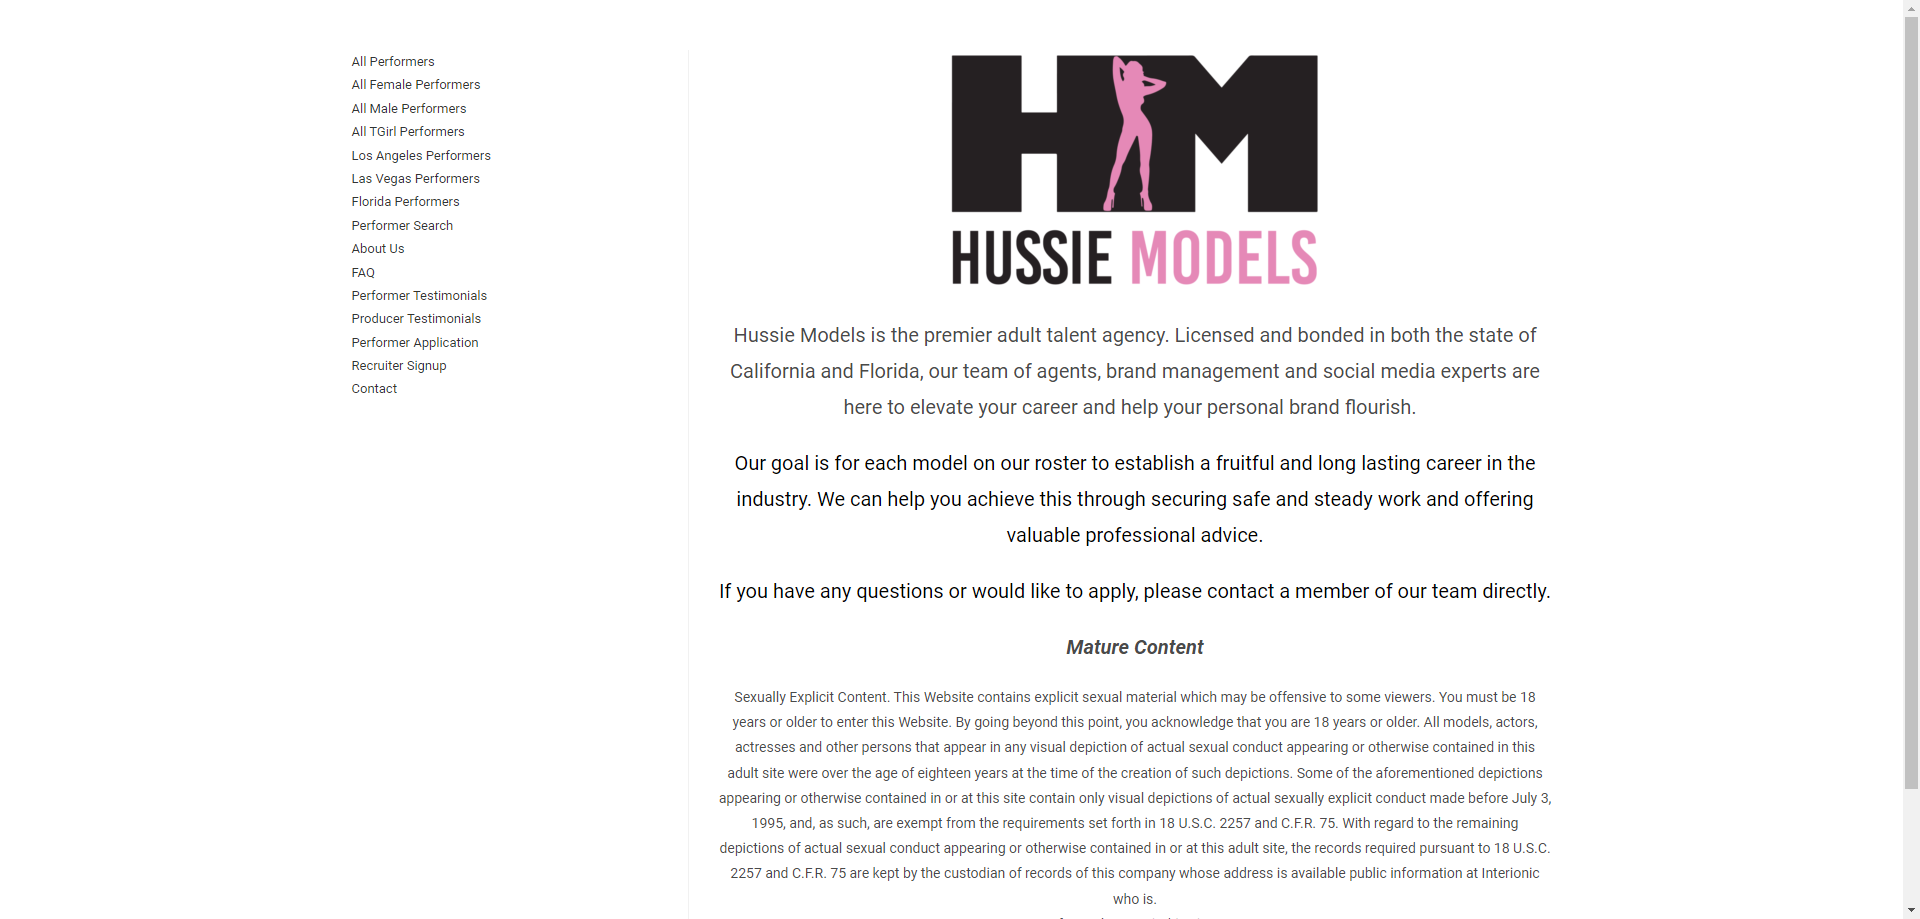 Hussie Models